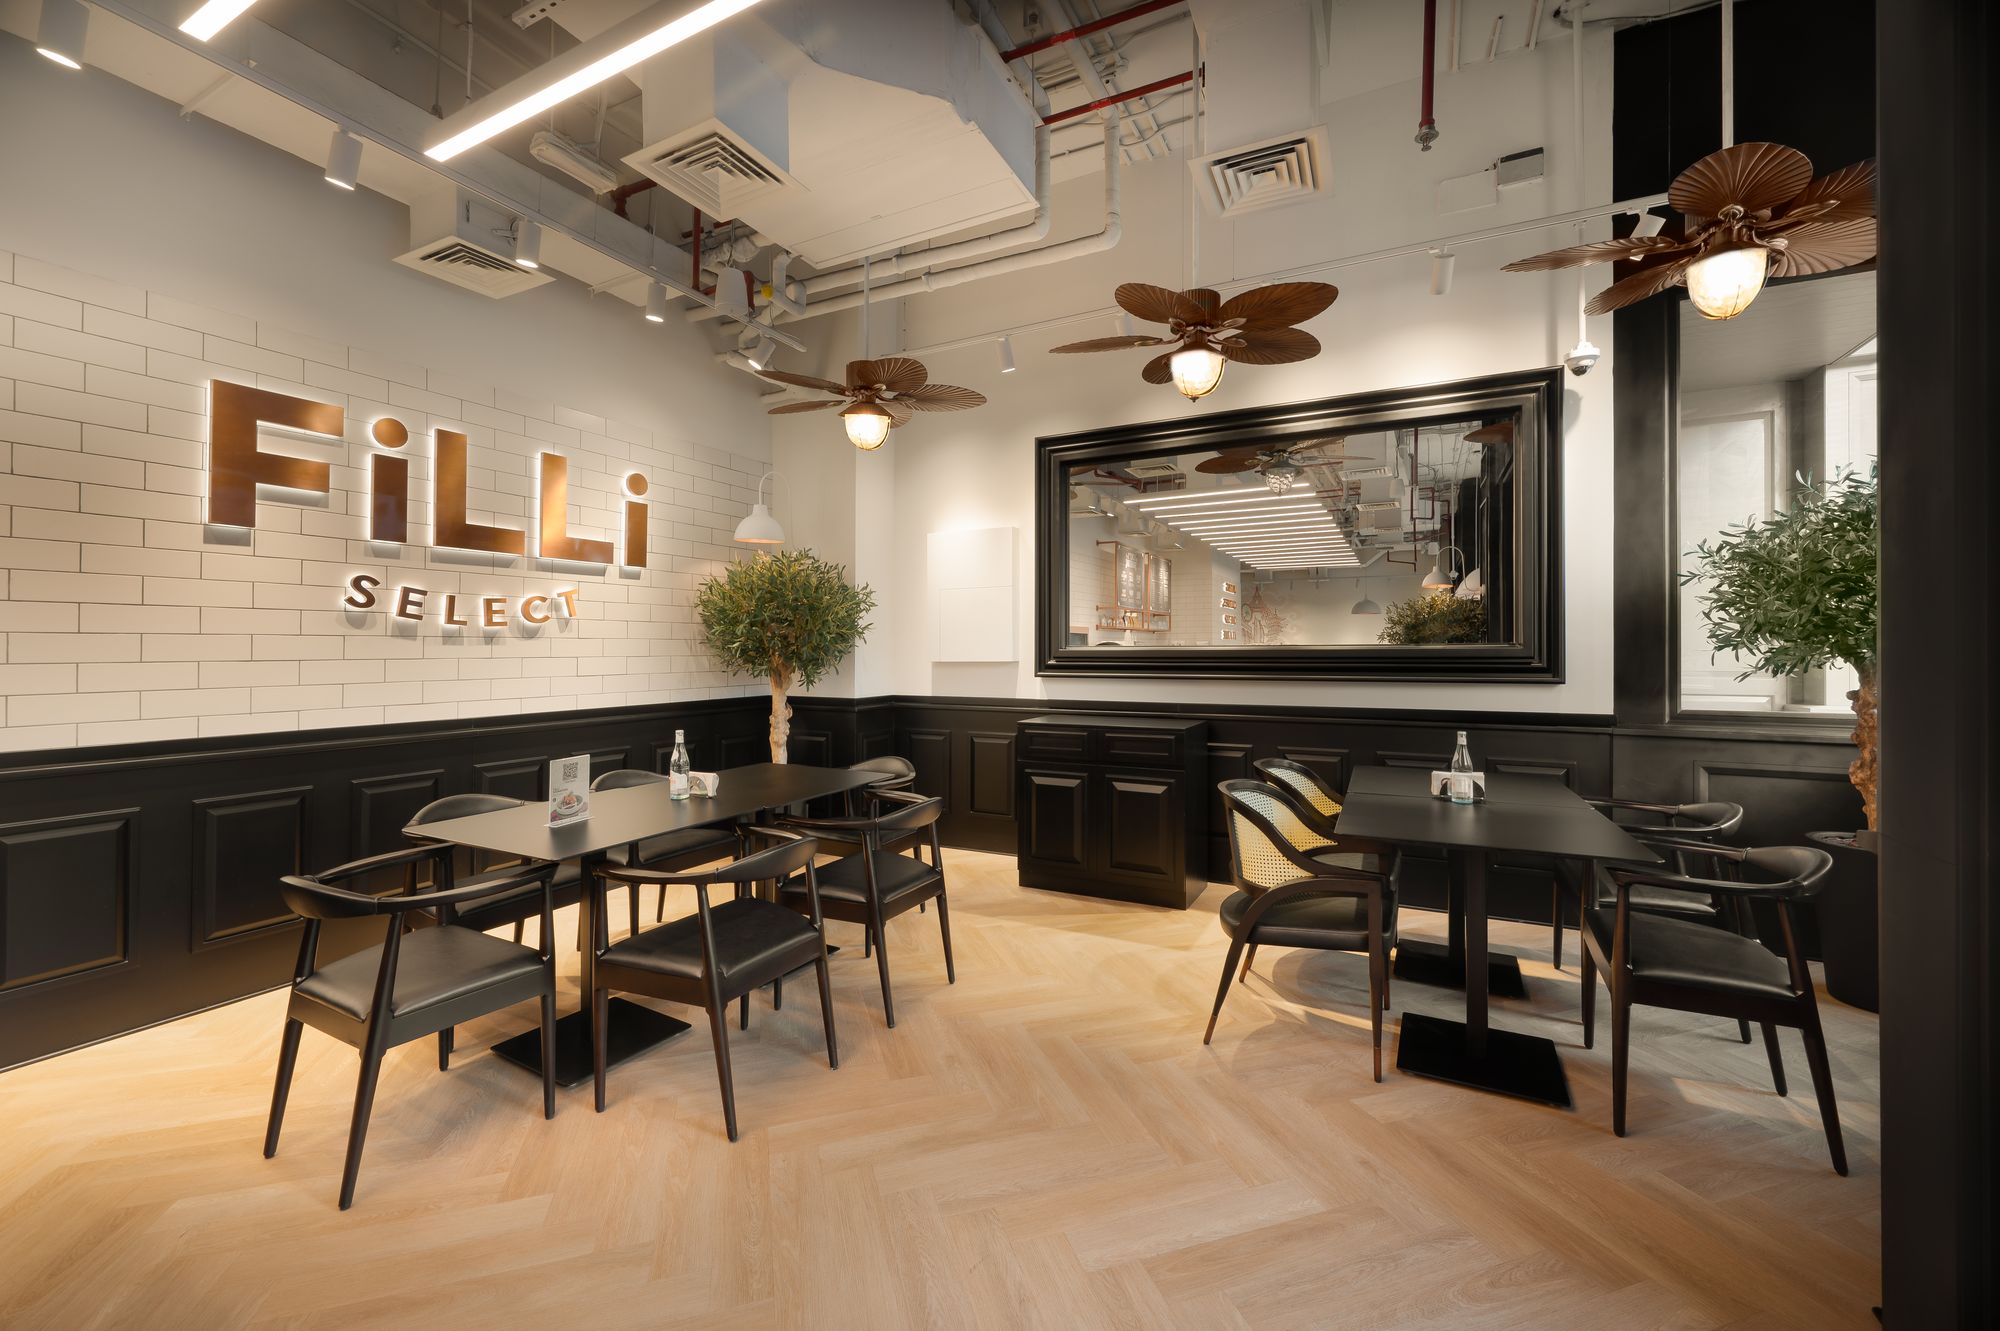 图片[3]|菲力精选咖啡馆|ART-Arrakis | 建筑室内设计的创新与灵感